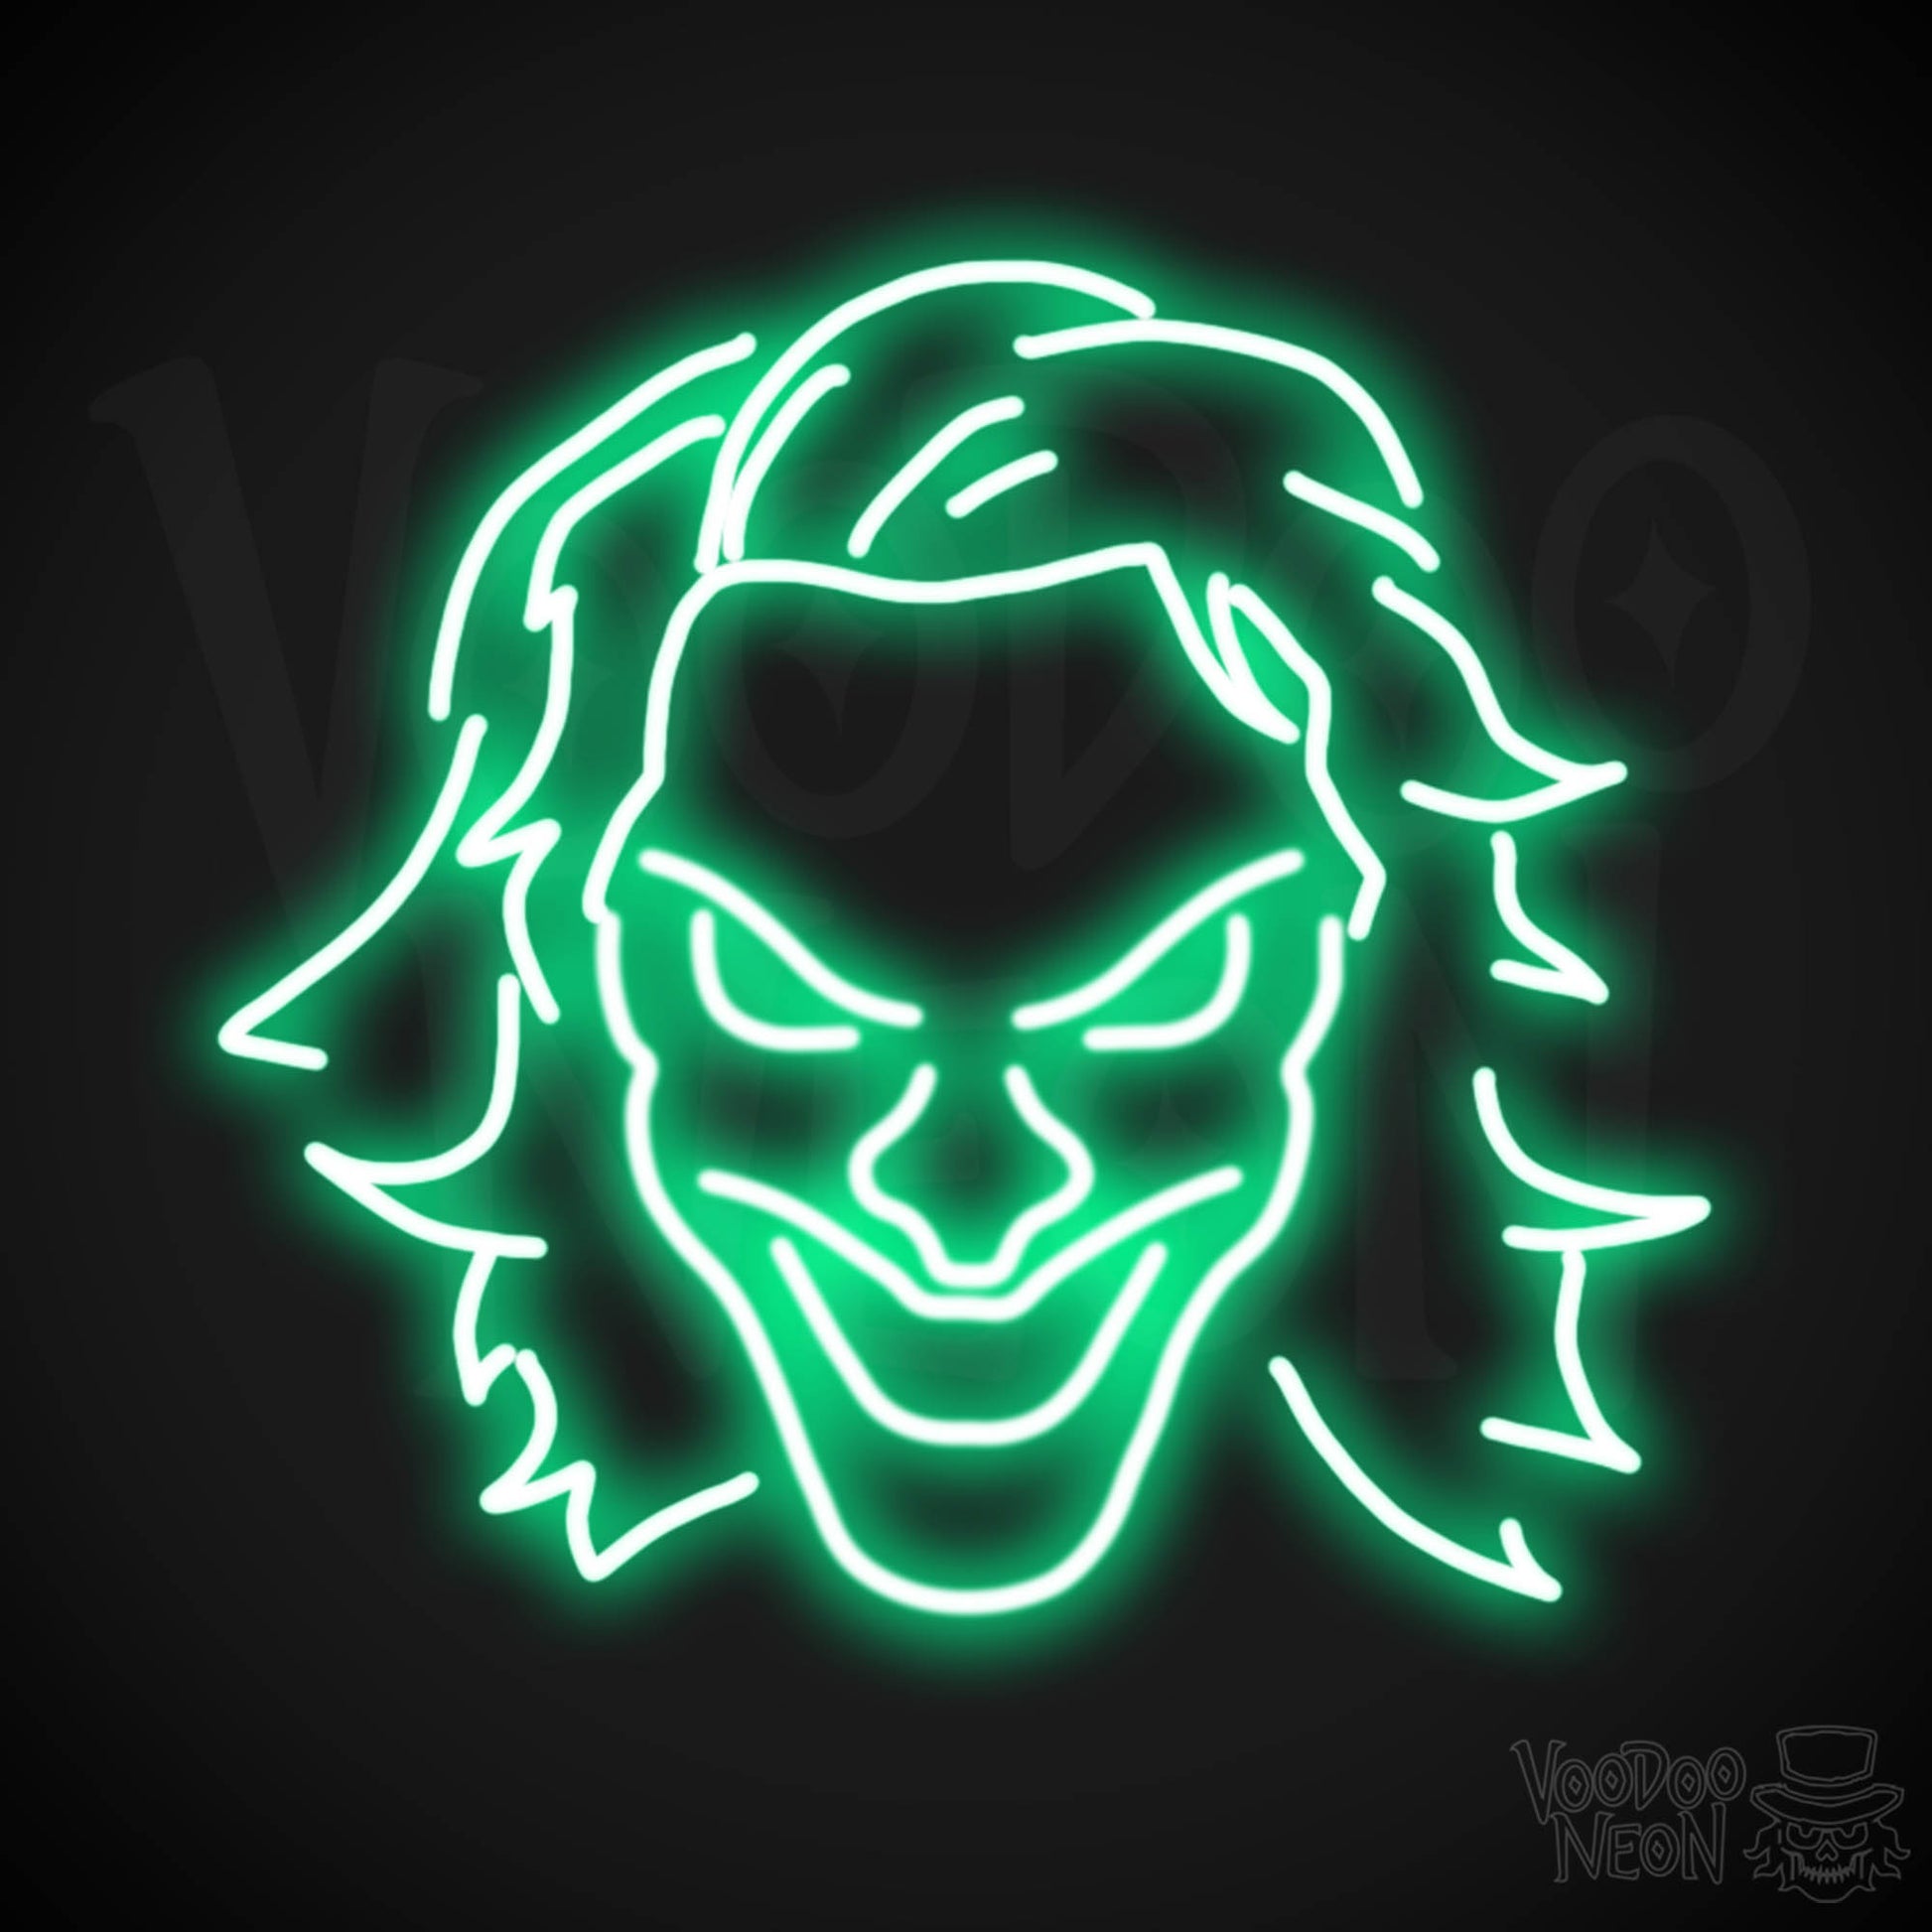 Joker Neon Sign - Neon Joker Sign - Joker LED Wall Art - Color Green